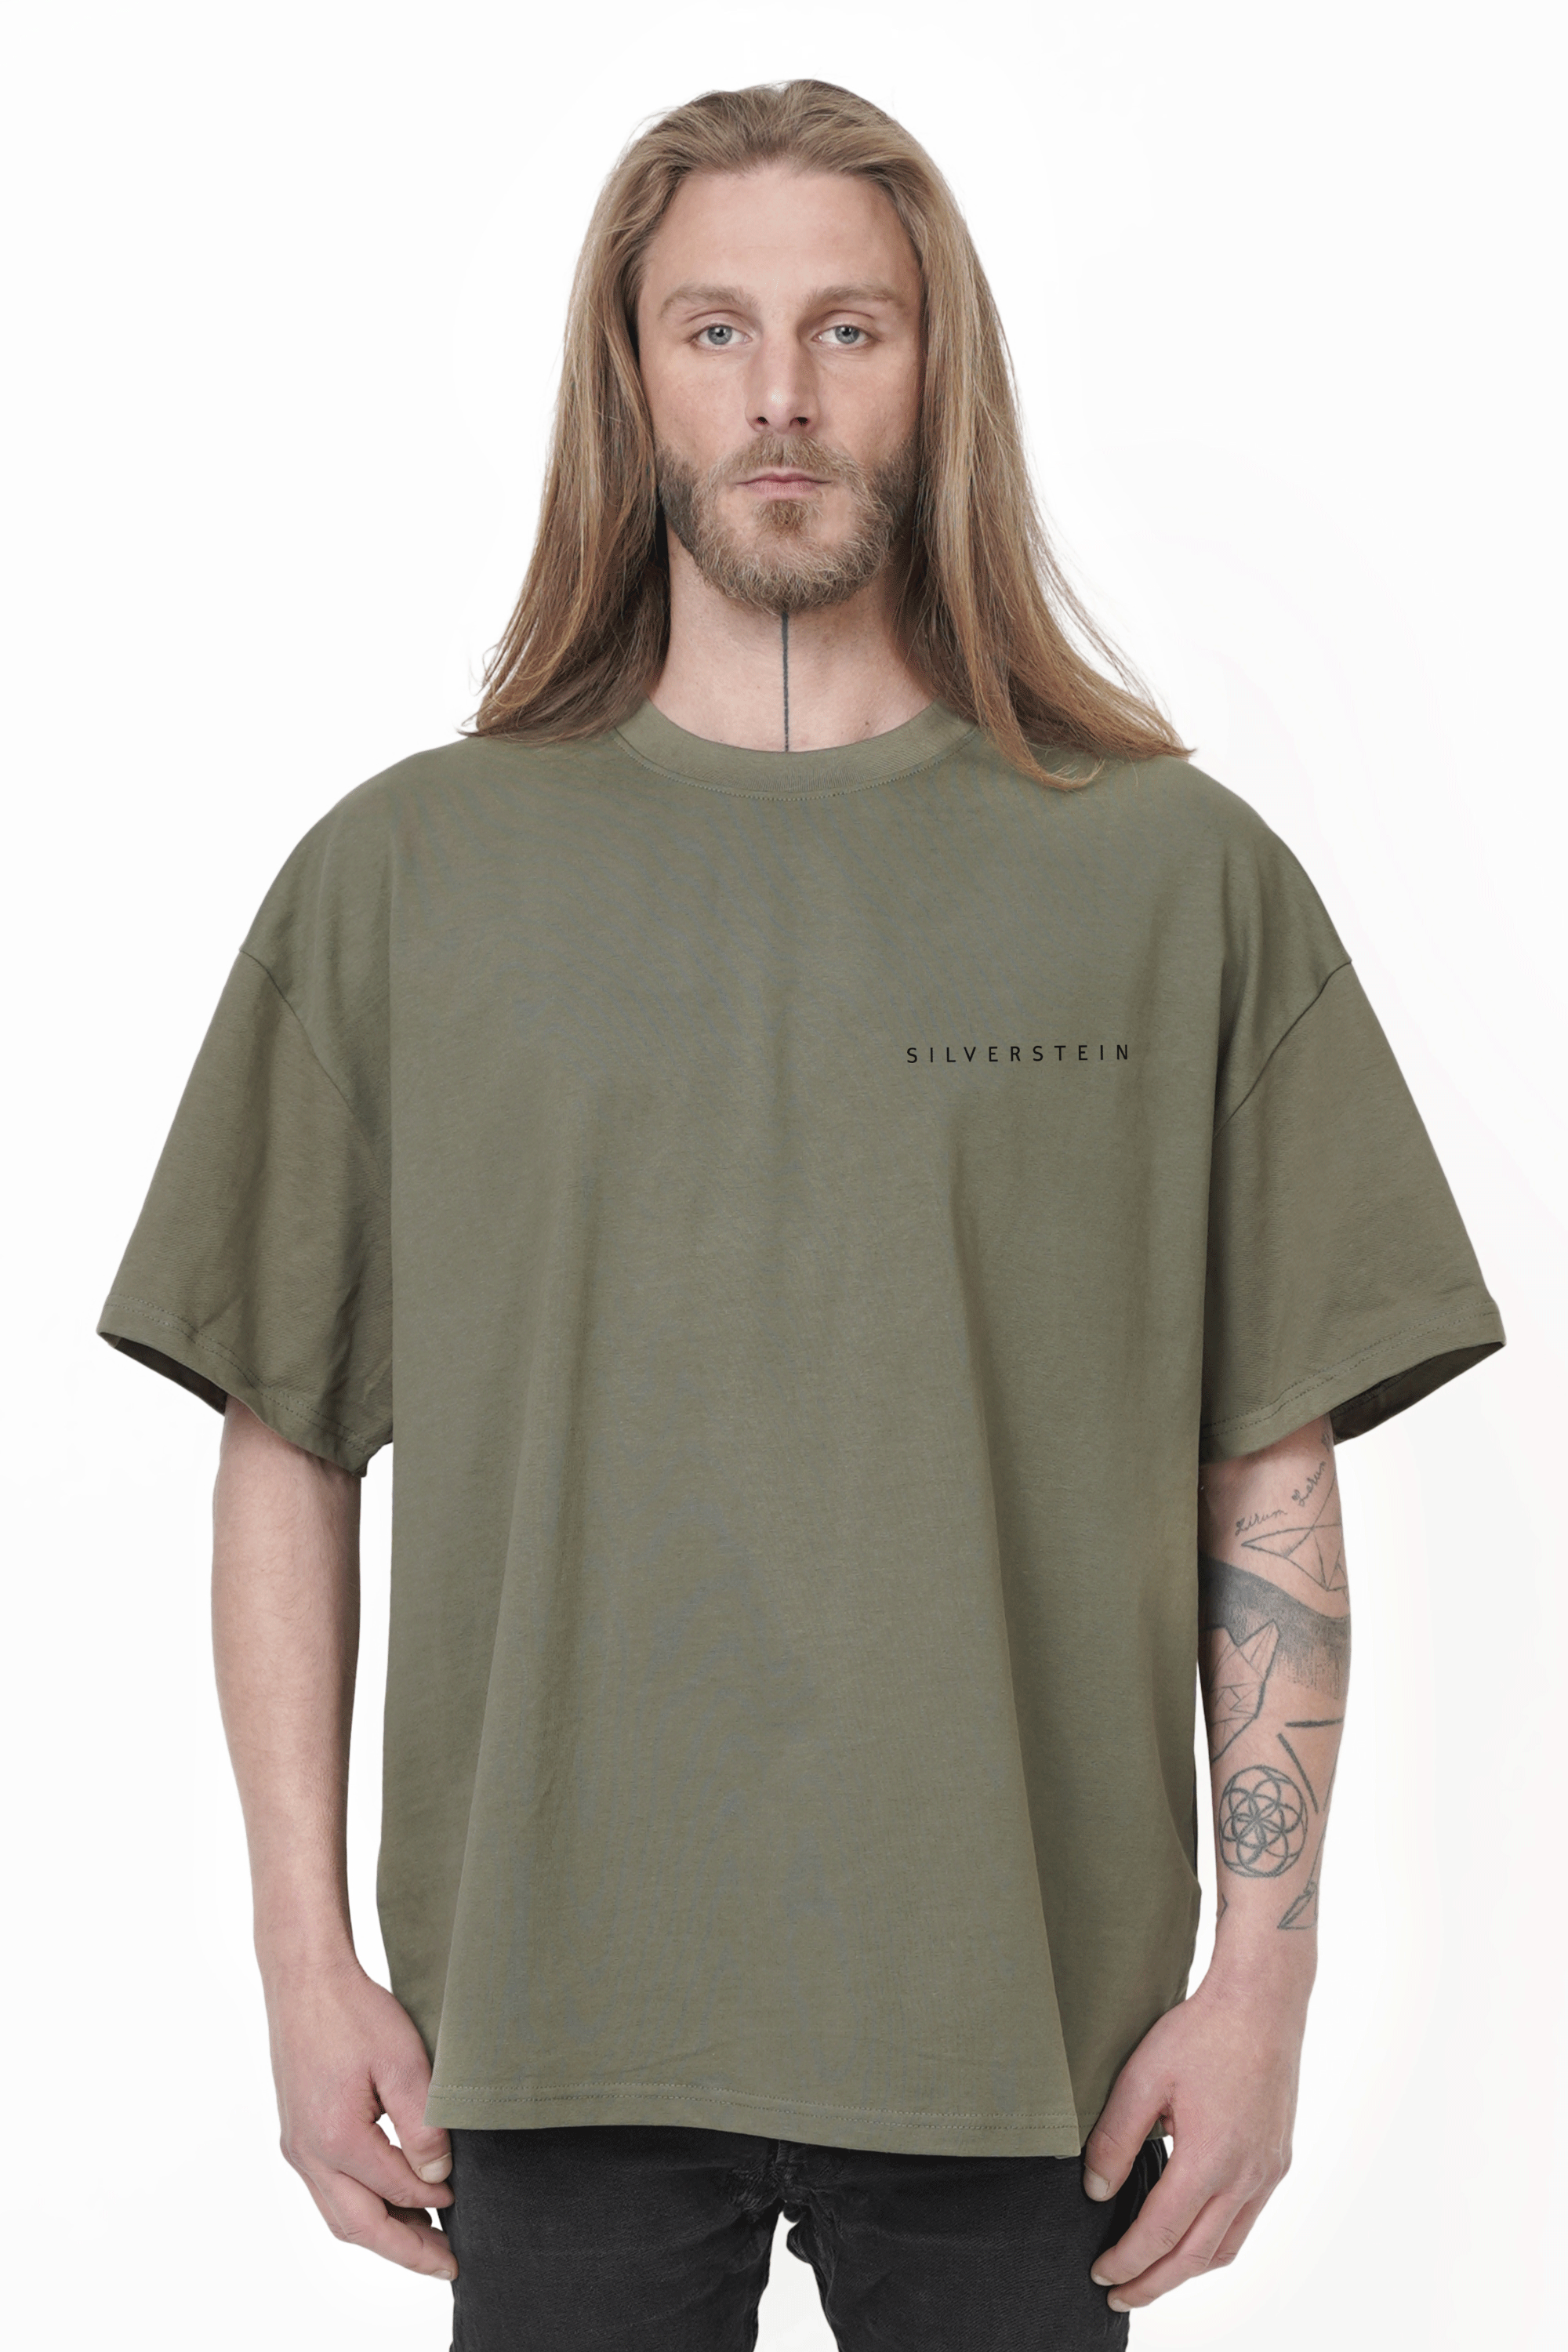 SILVERSTEIN "Floh Green"  Unisex T-Shirt